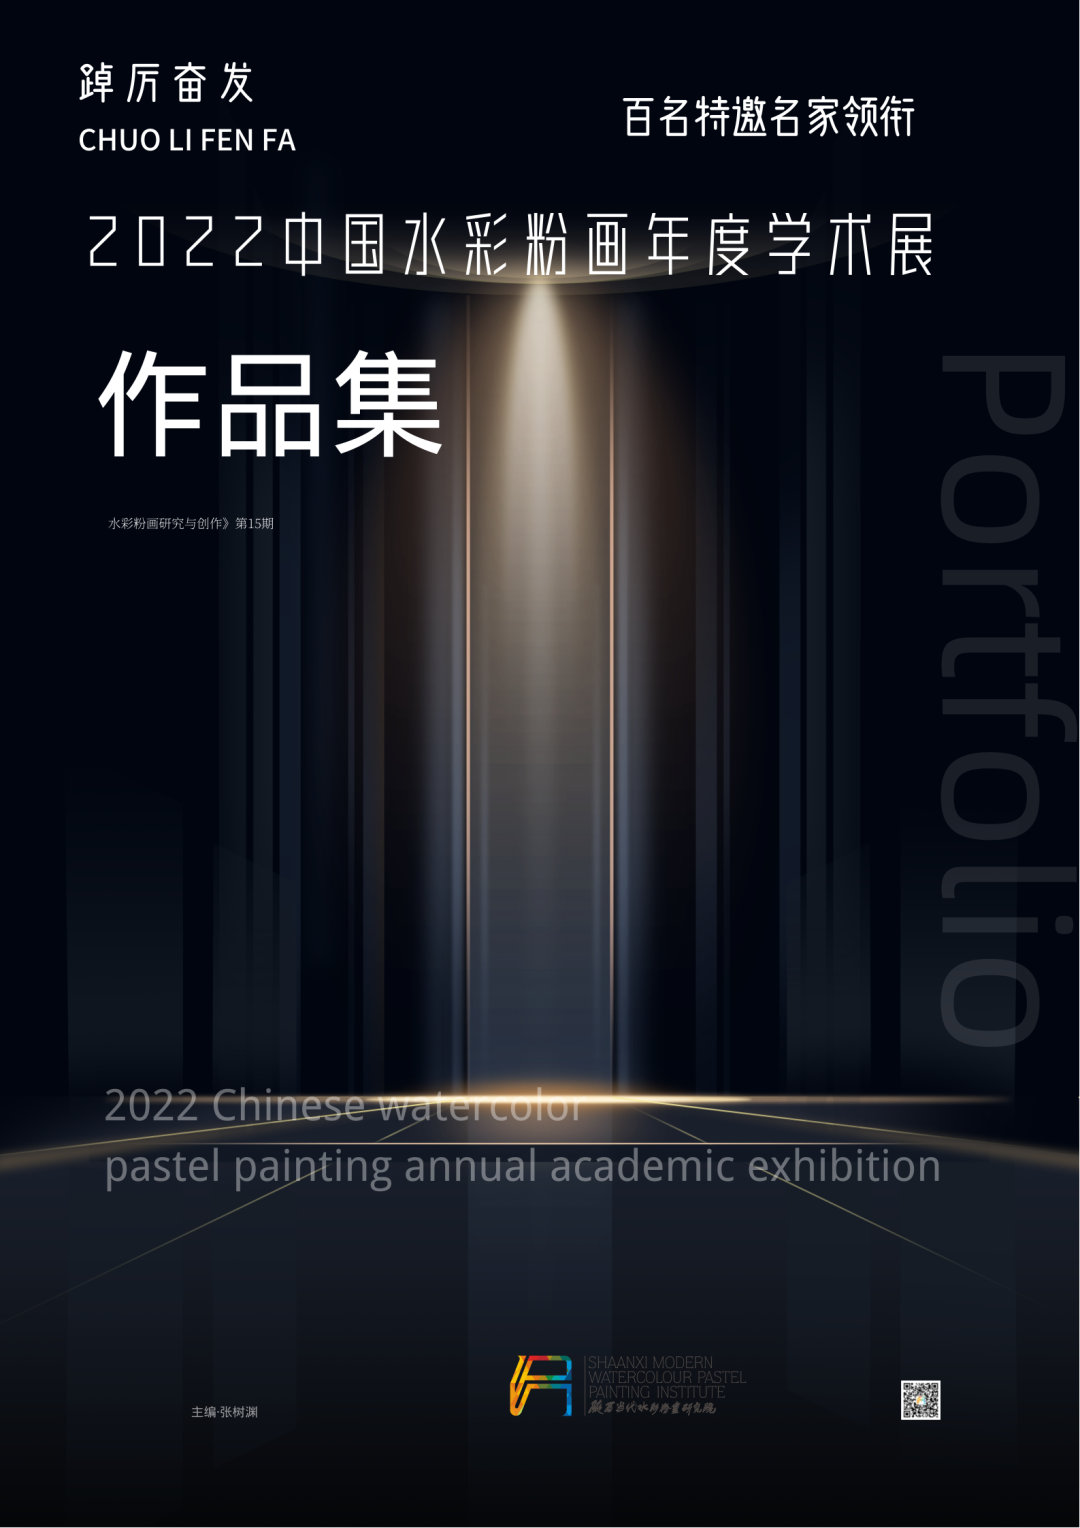 踔厉奋发·2022中国水彩粉画年度学术展征稿通知 | 百名特邀艺术家领衔(图3)